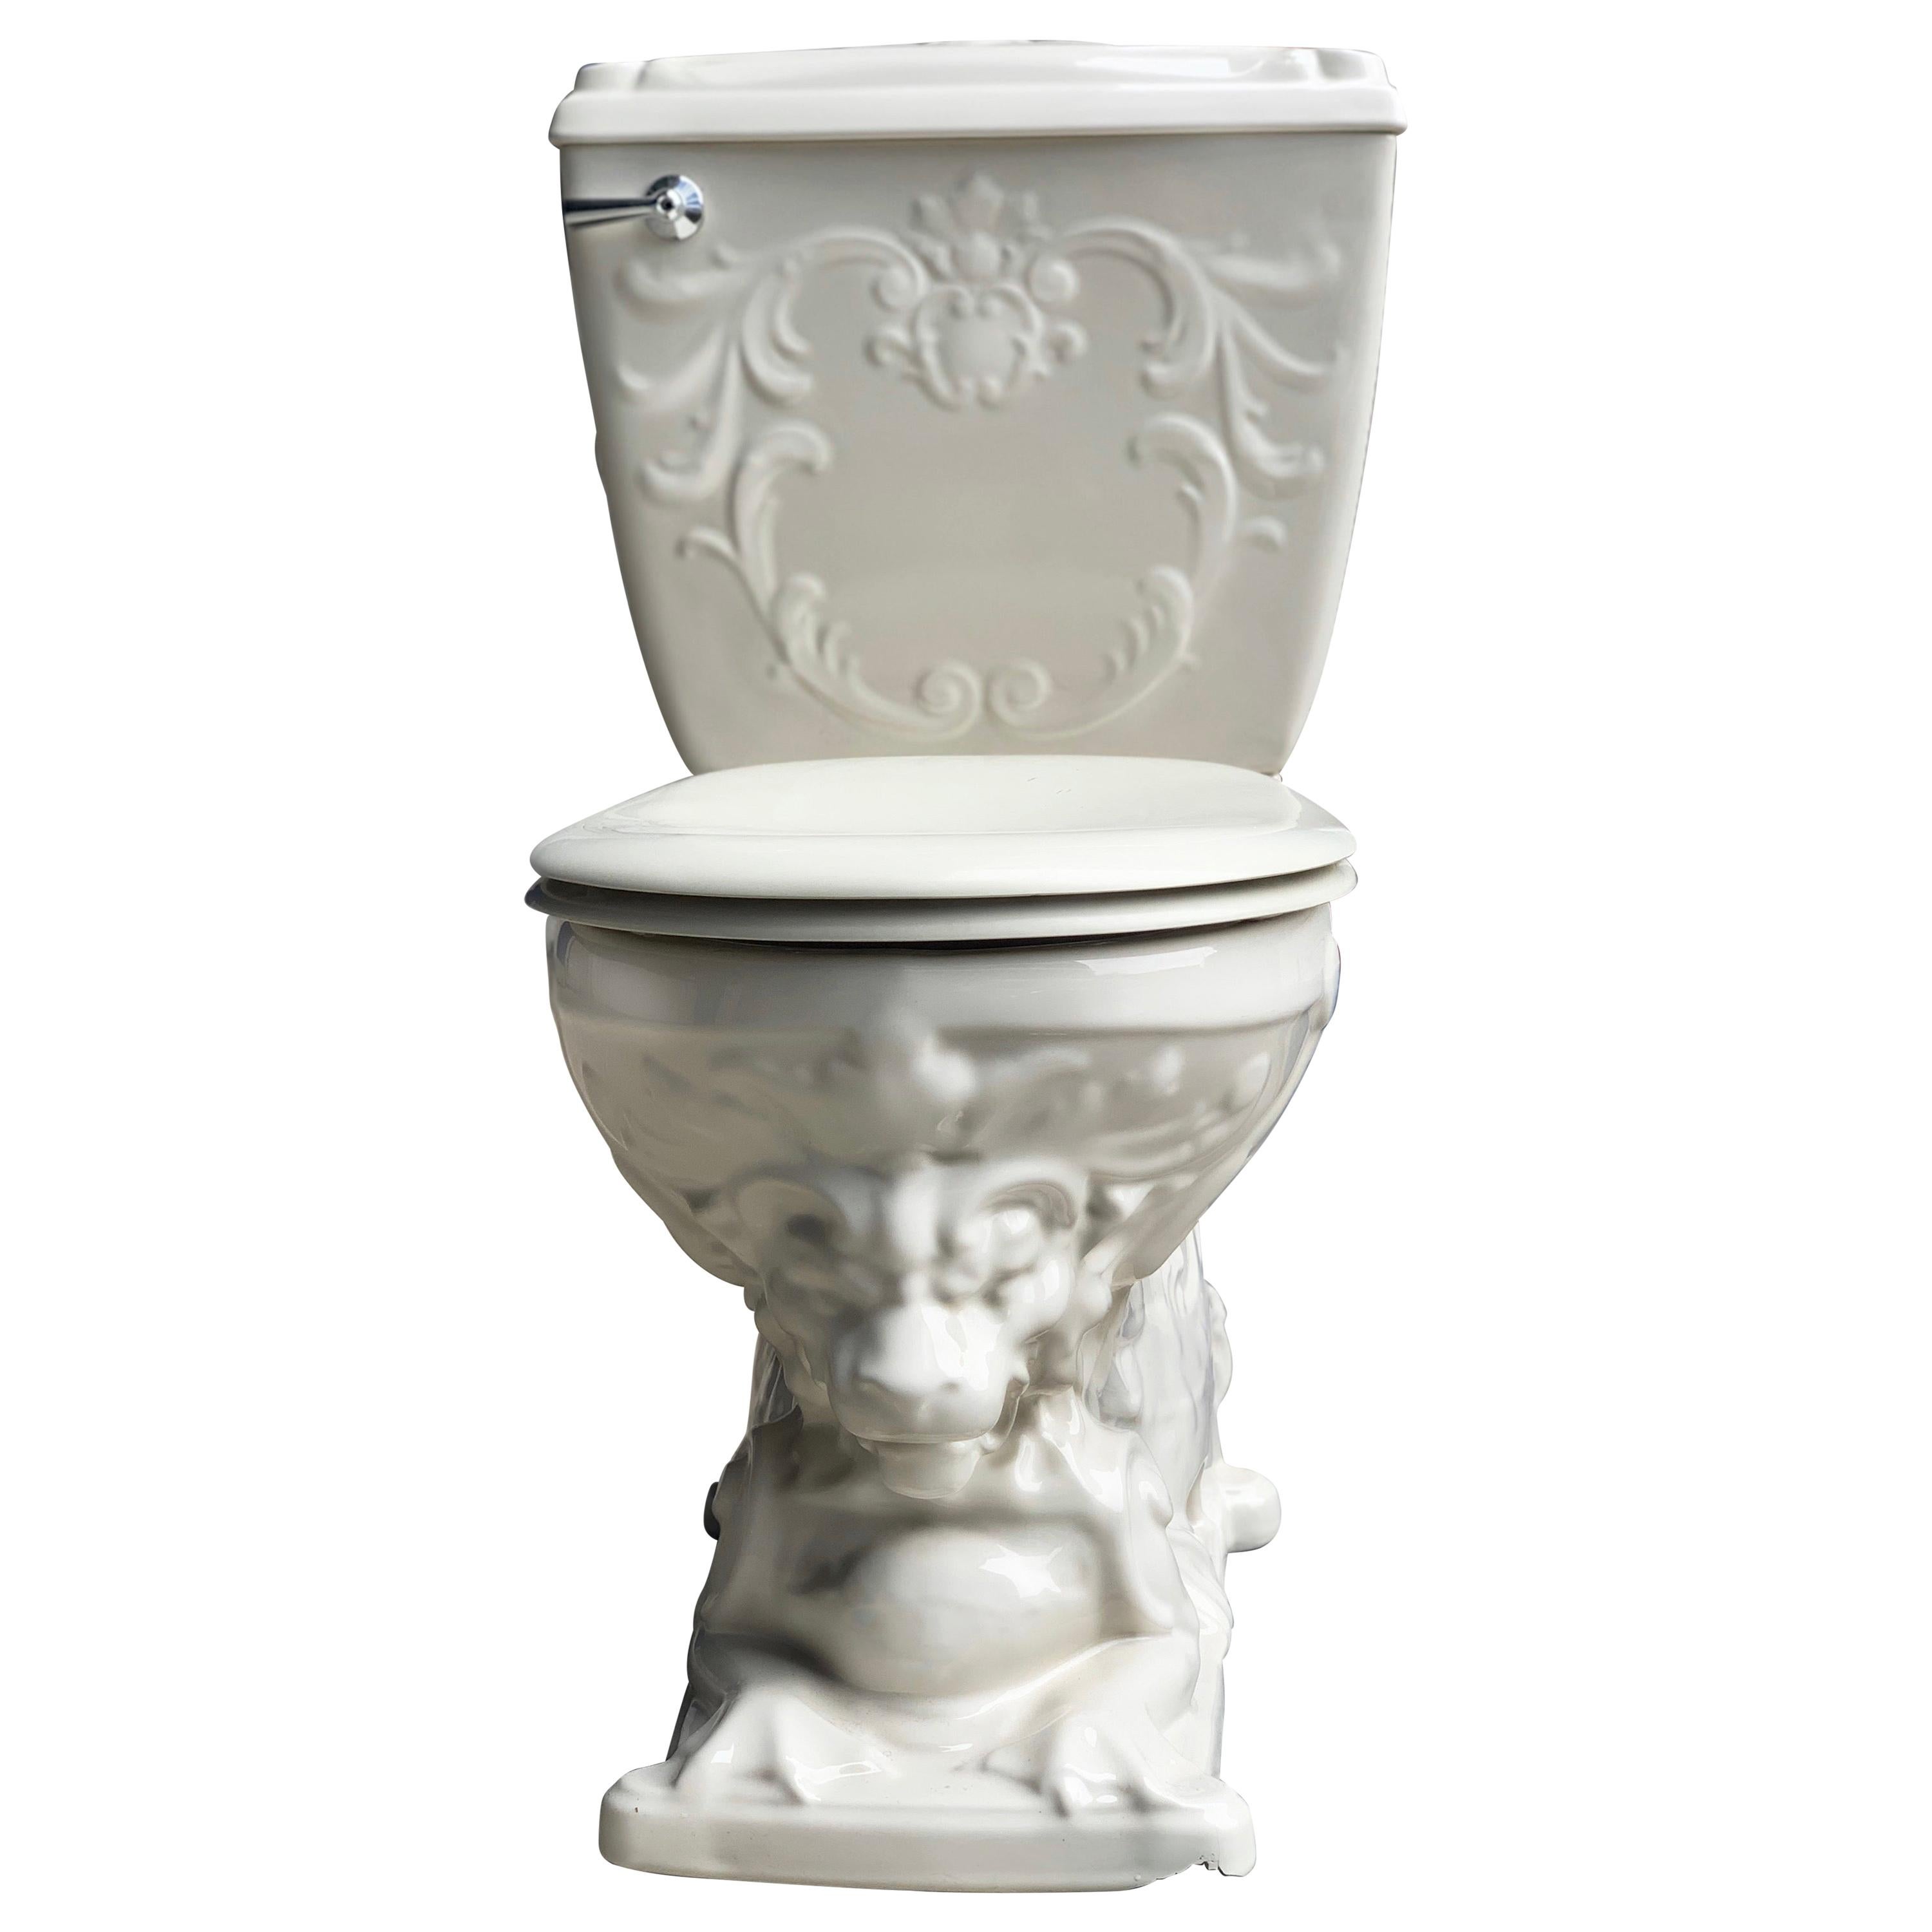 Vintage Laufen Nautilus Regal Lion Porcelain Throne Toilet Water Closet, Cistern